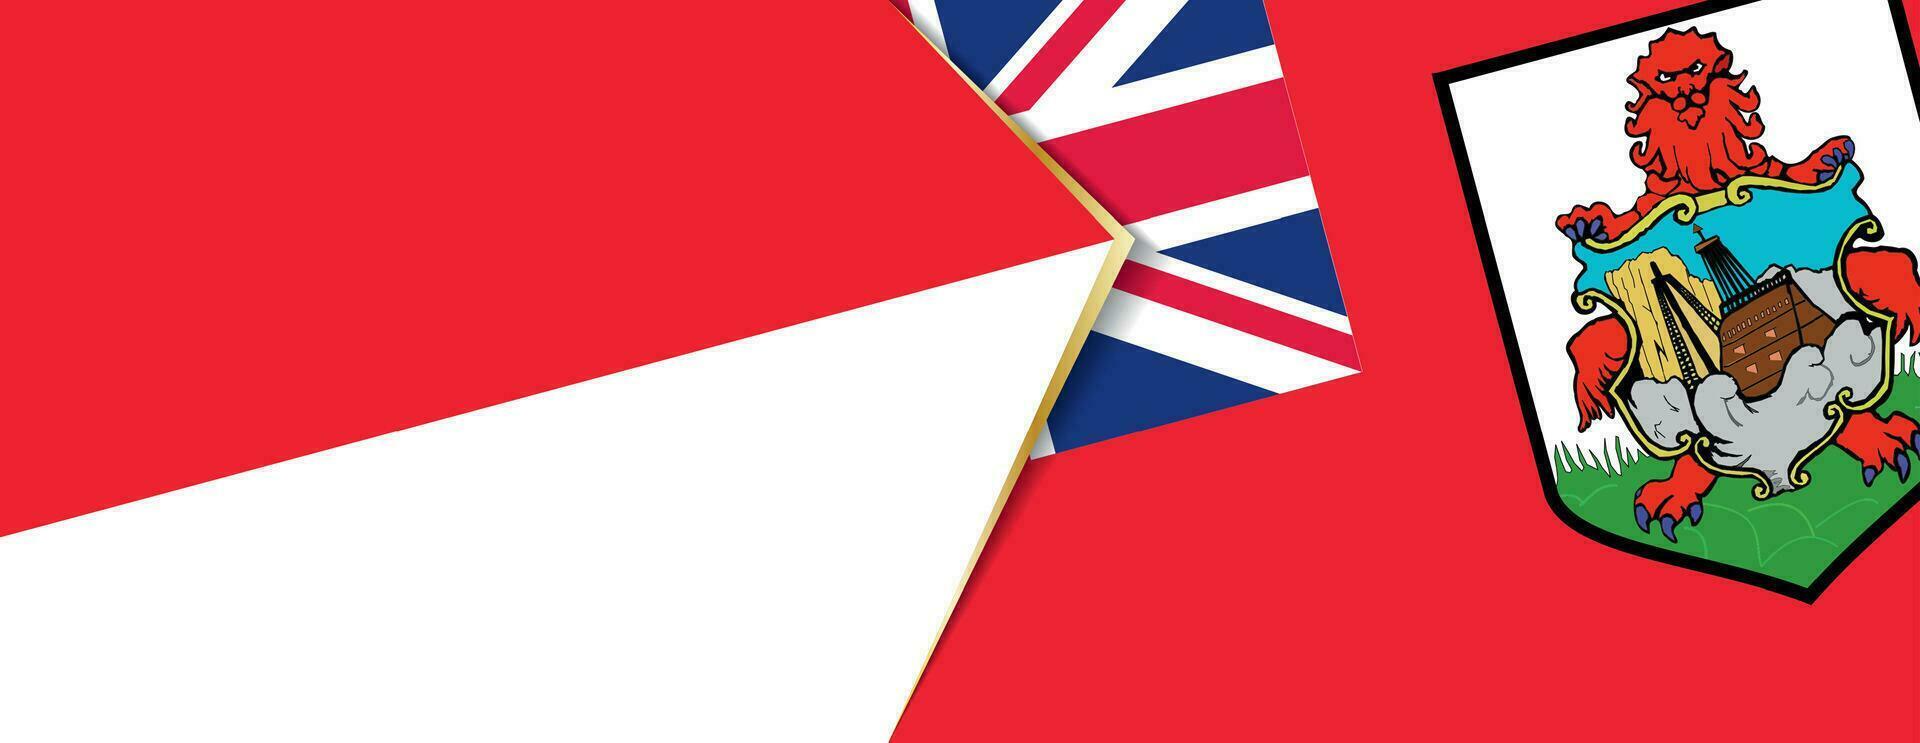 Indonesien und Bermudas Flaggen, zwei Vektor Flaggen.